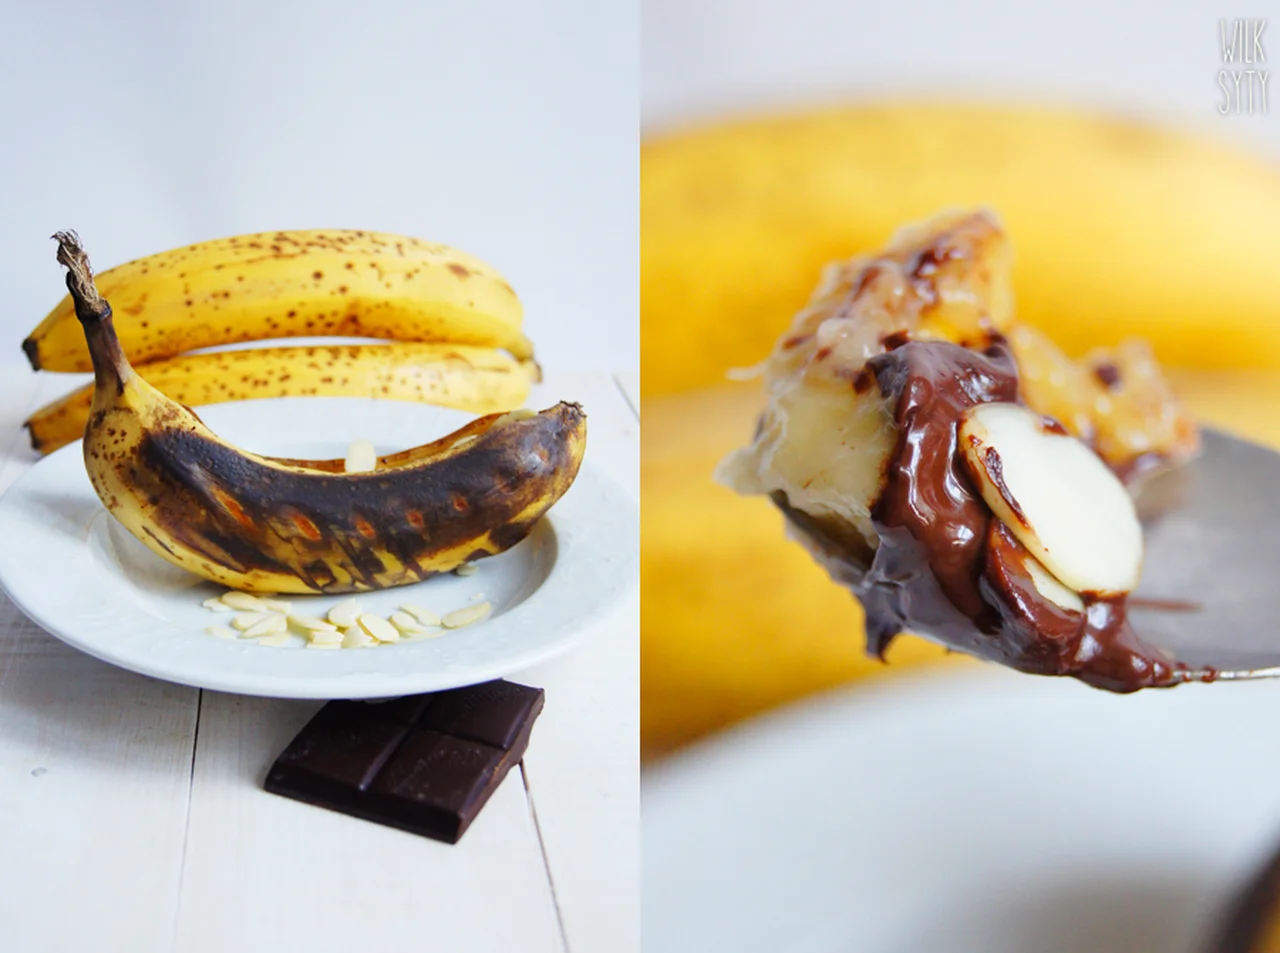 Grillowane / pieczone banany z czekoladą (3 składniki)